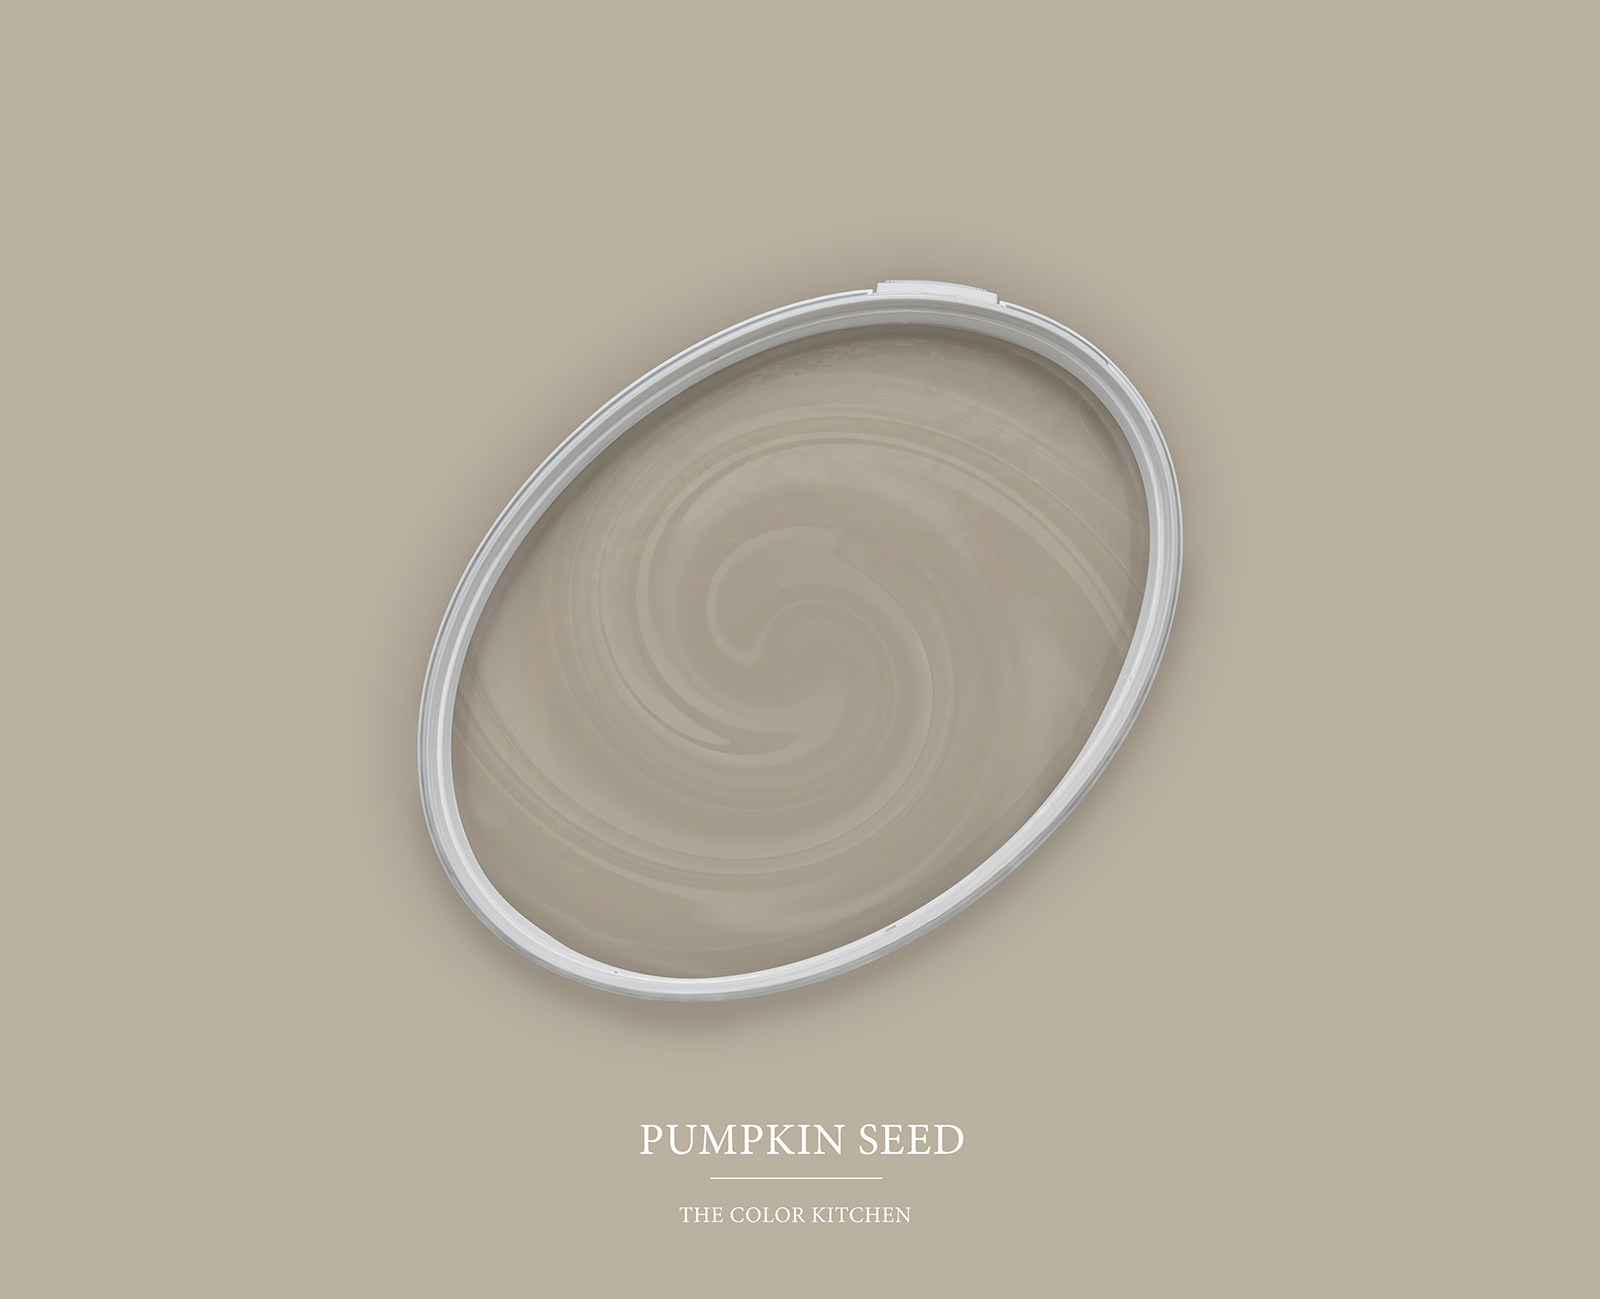 Muurverf TCK1015 »Pumpkin Seed« in huiselijk grijs – 5.0 liter
